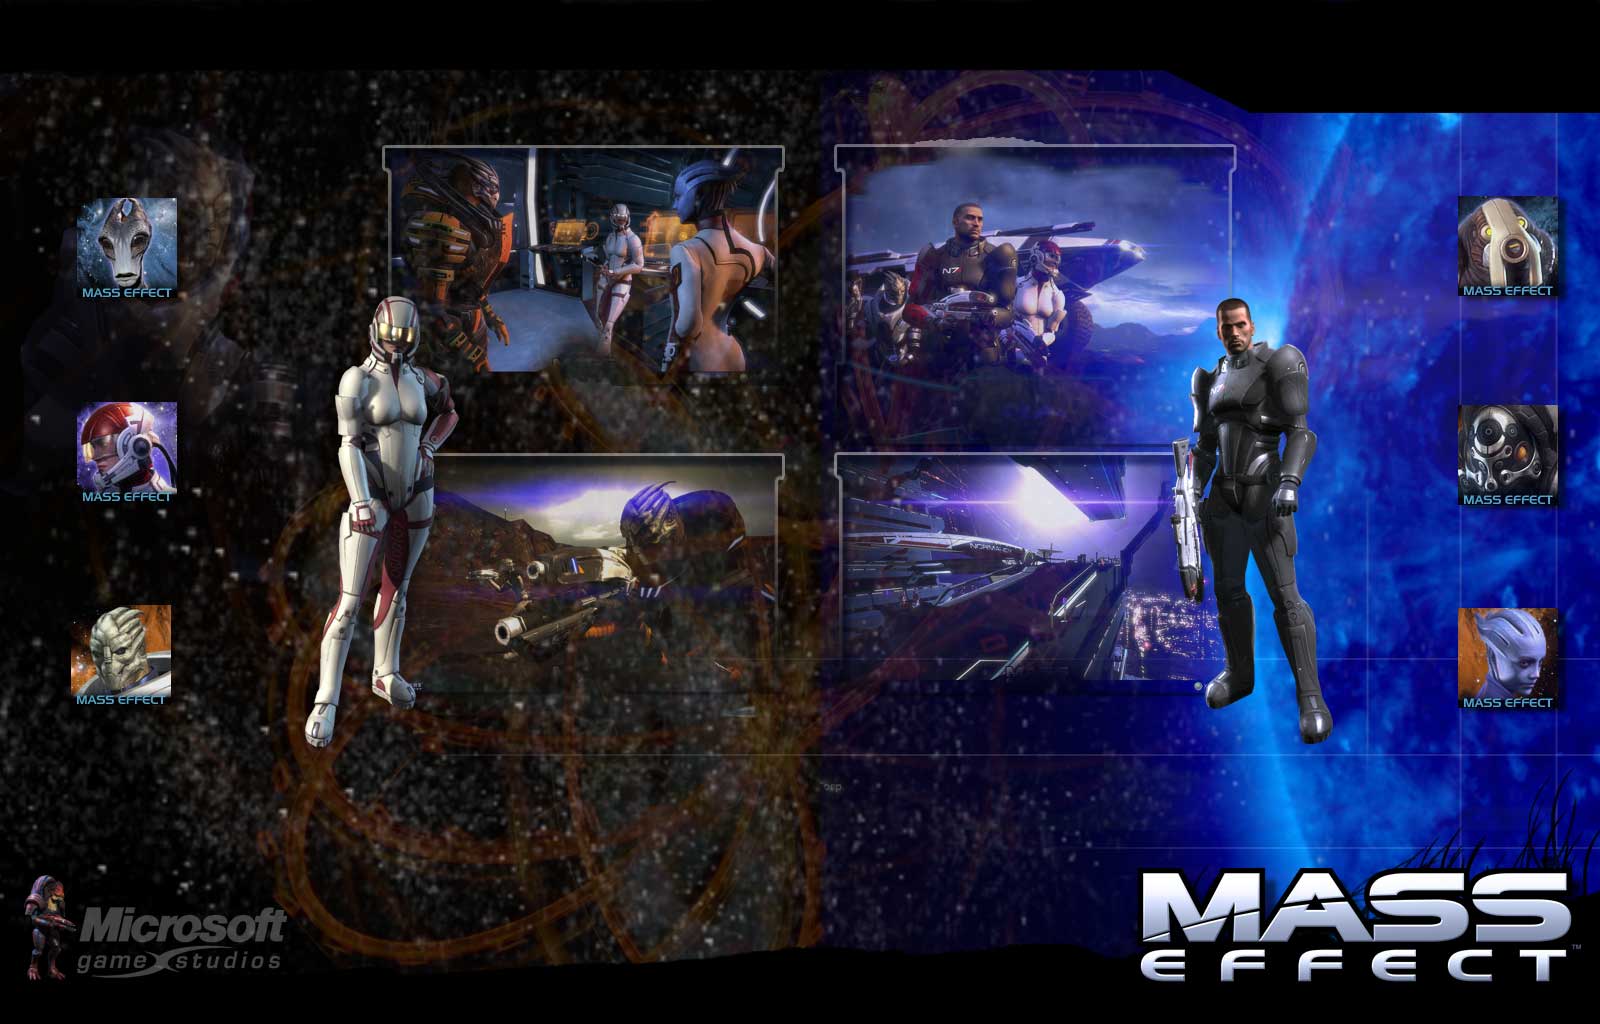 Mass Effect Das Science Fiction Rollenspiel Von Bioware Fan